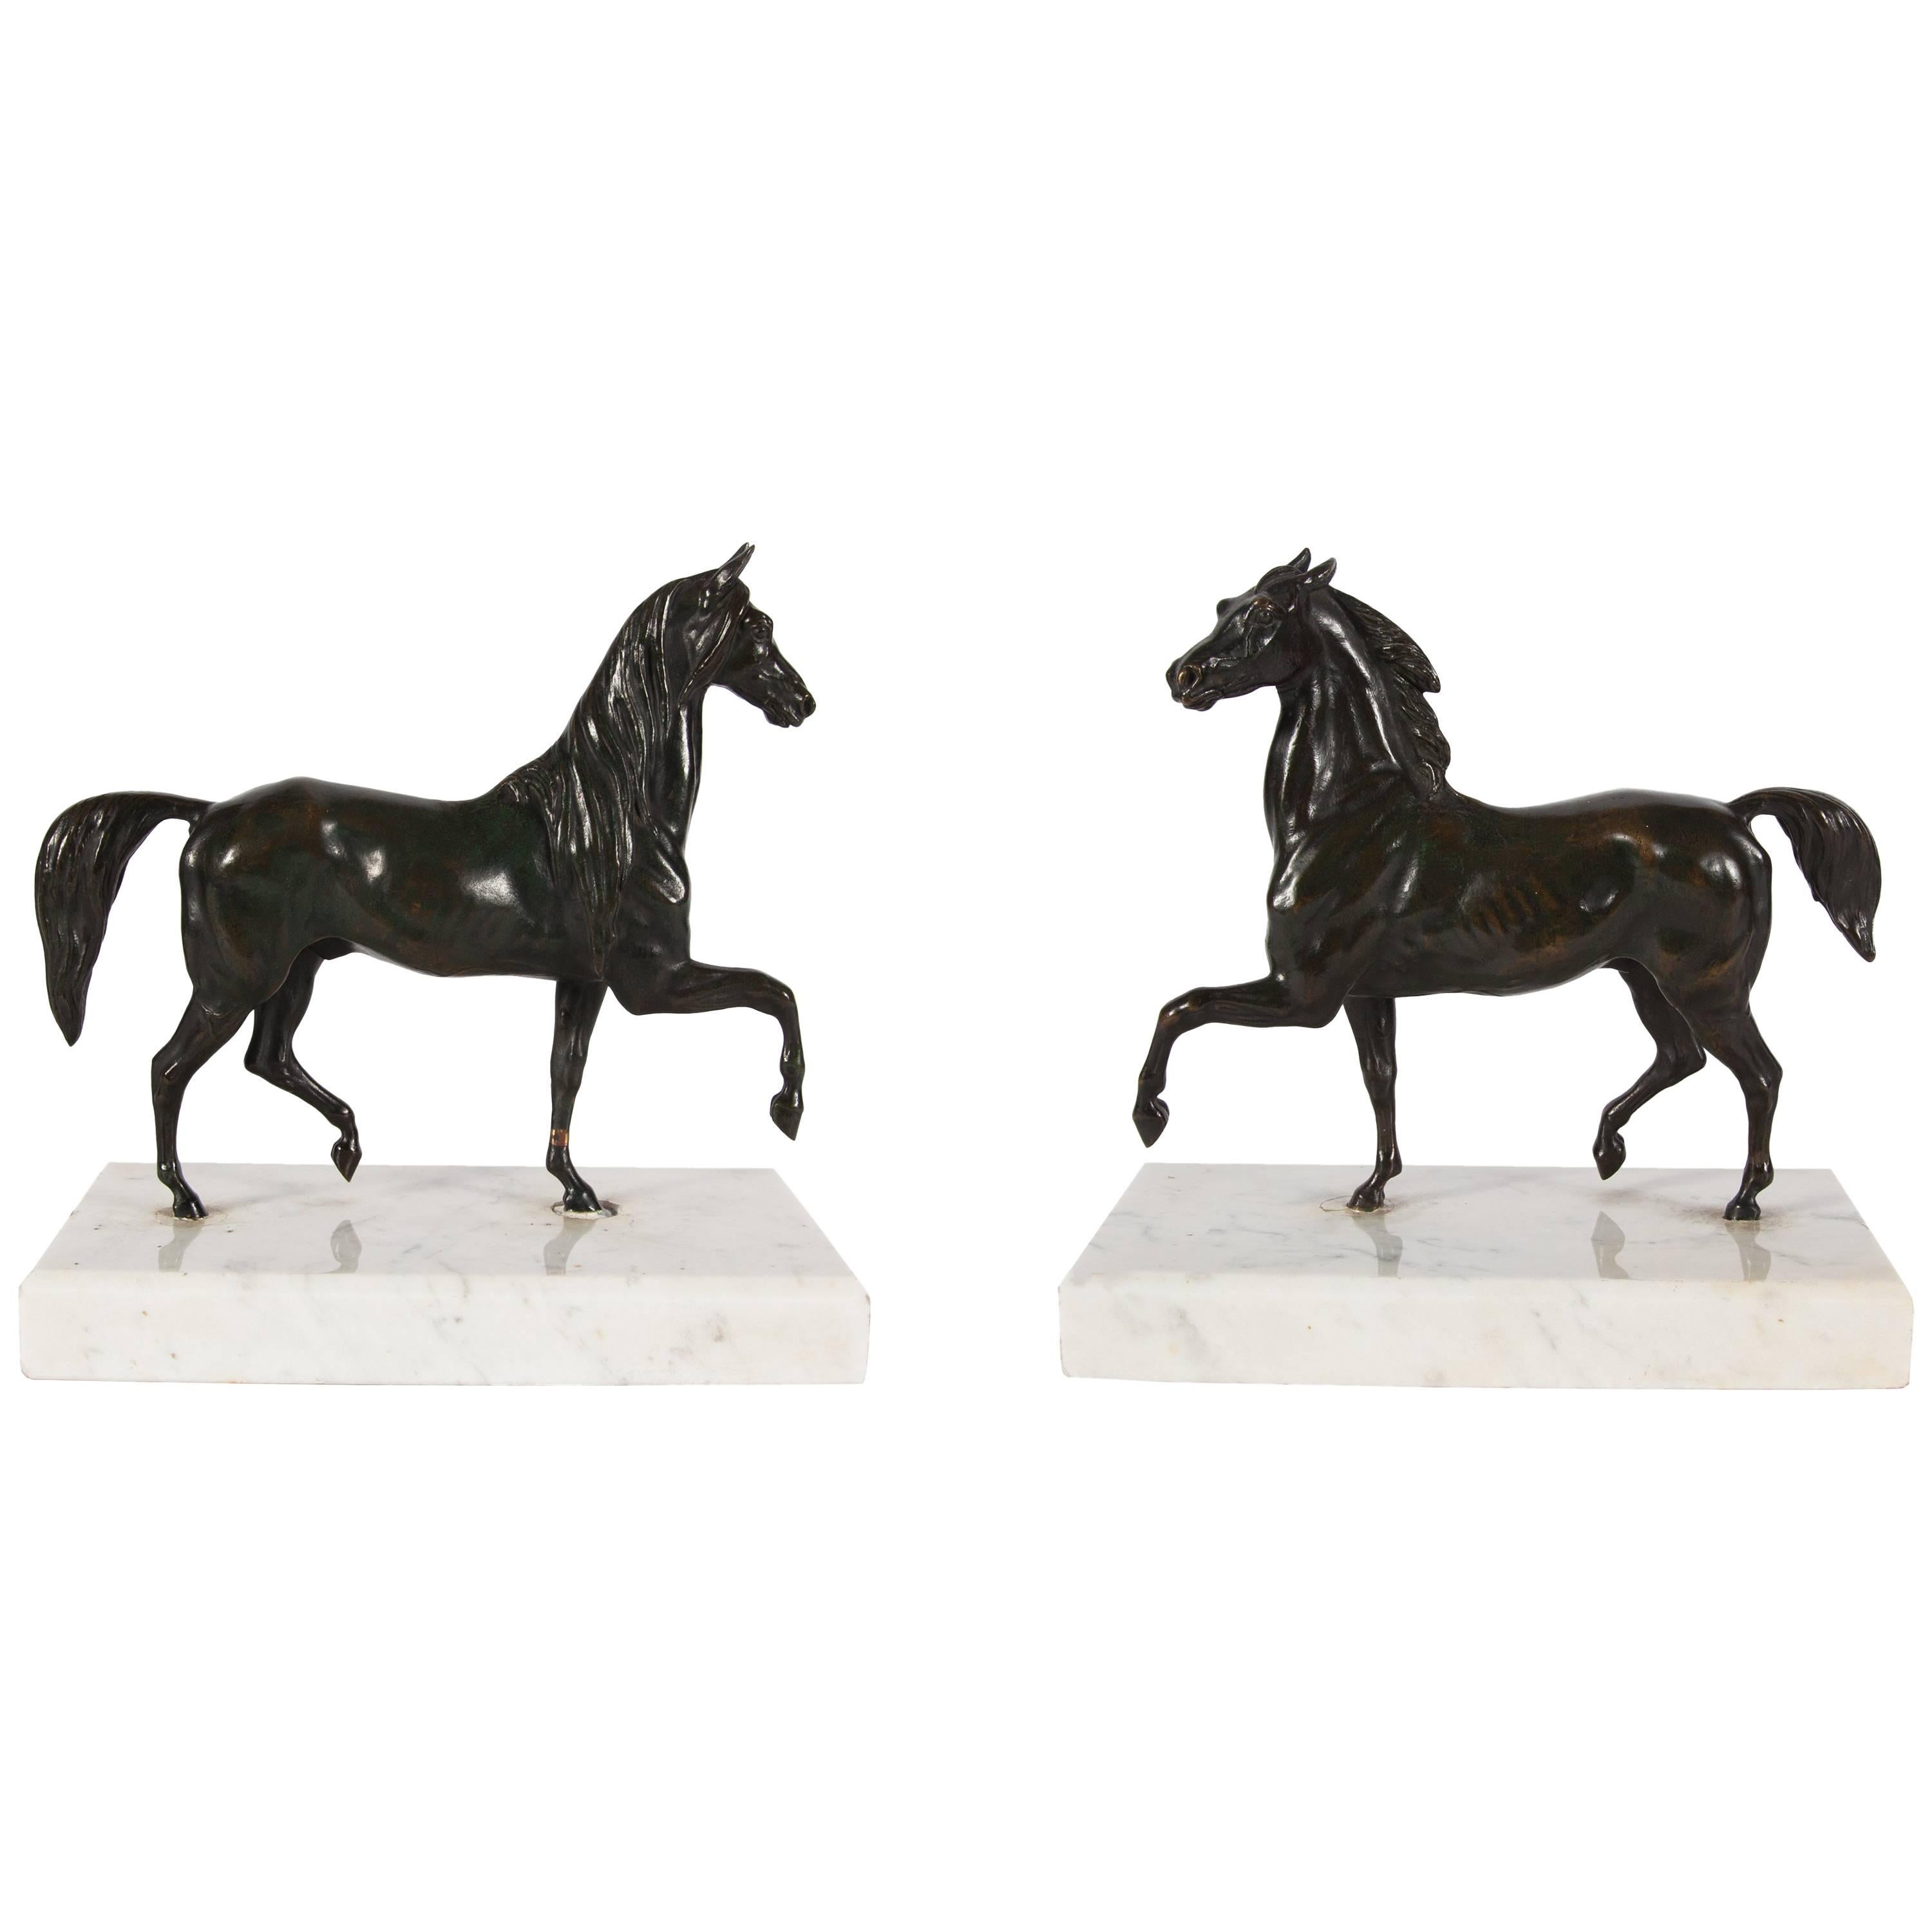 Pair of Antique Bronze Equestrian Sculptures